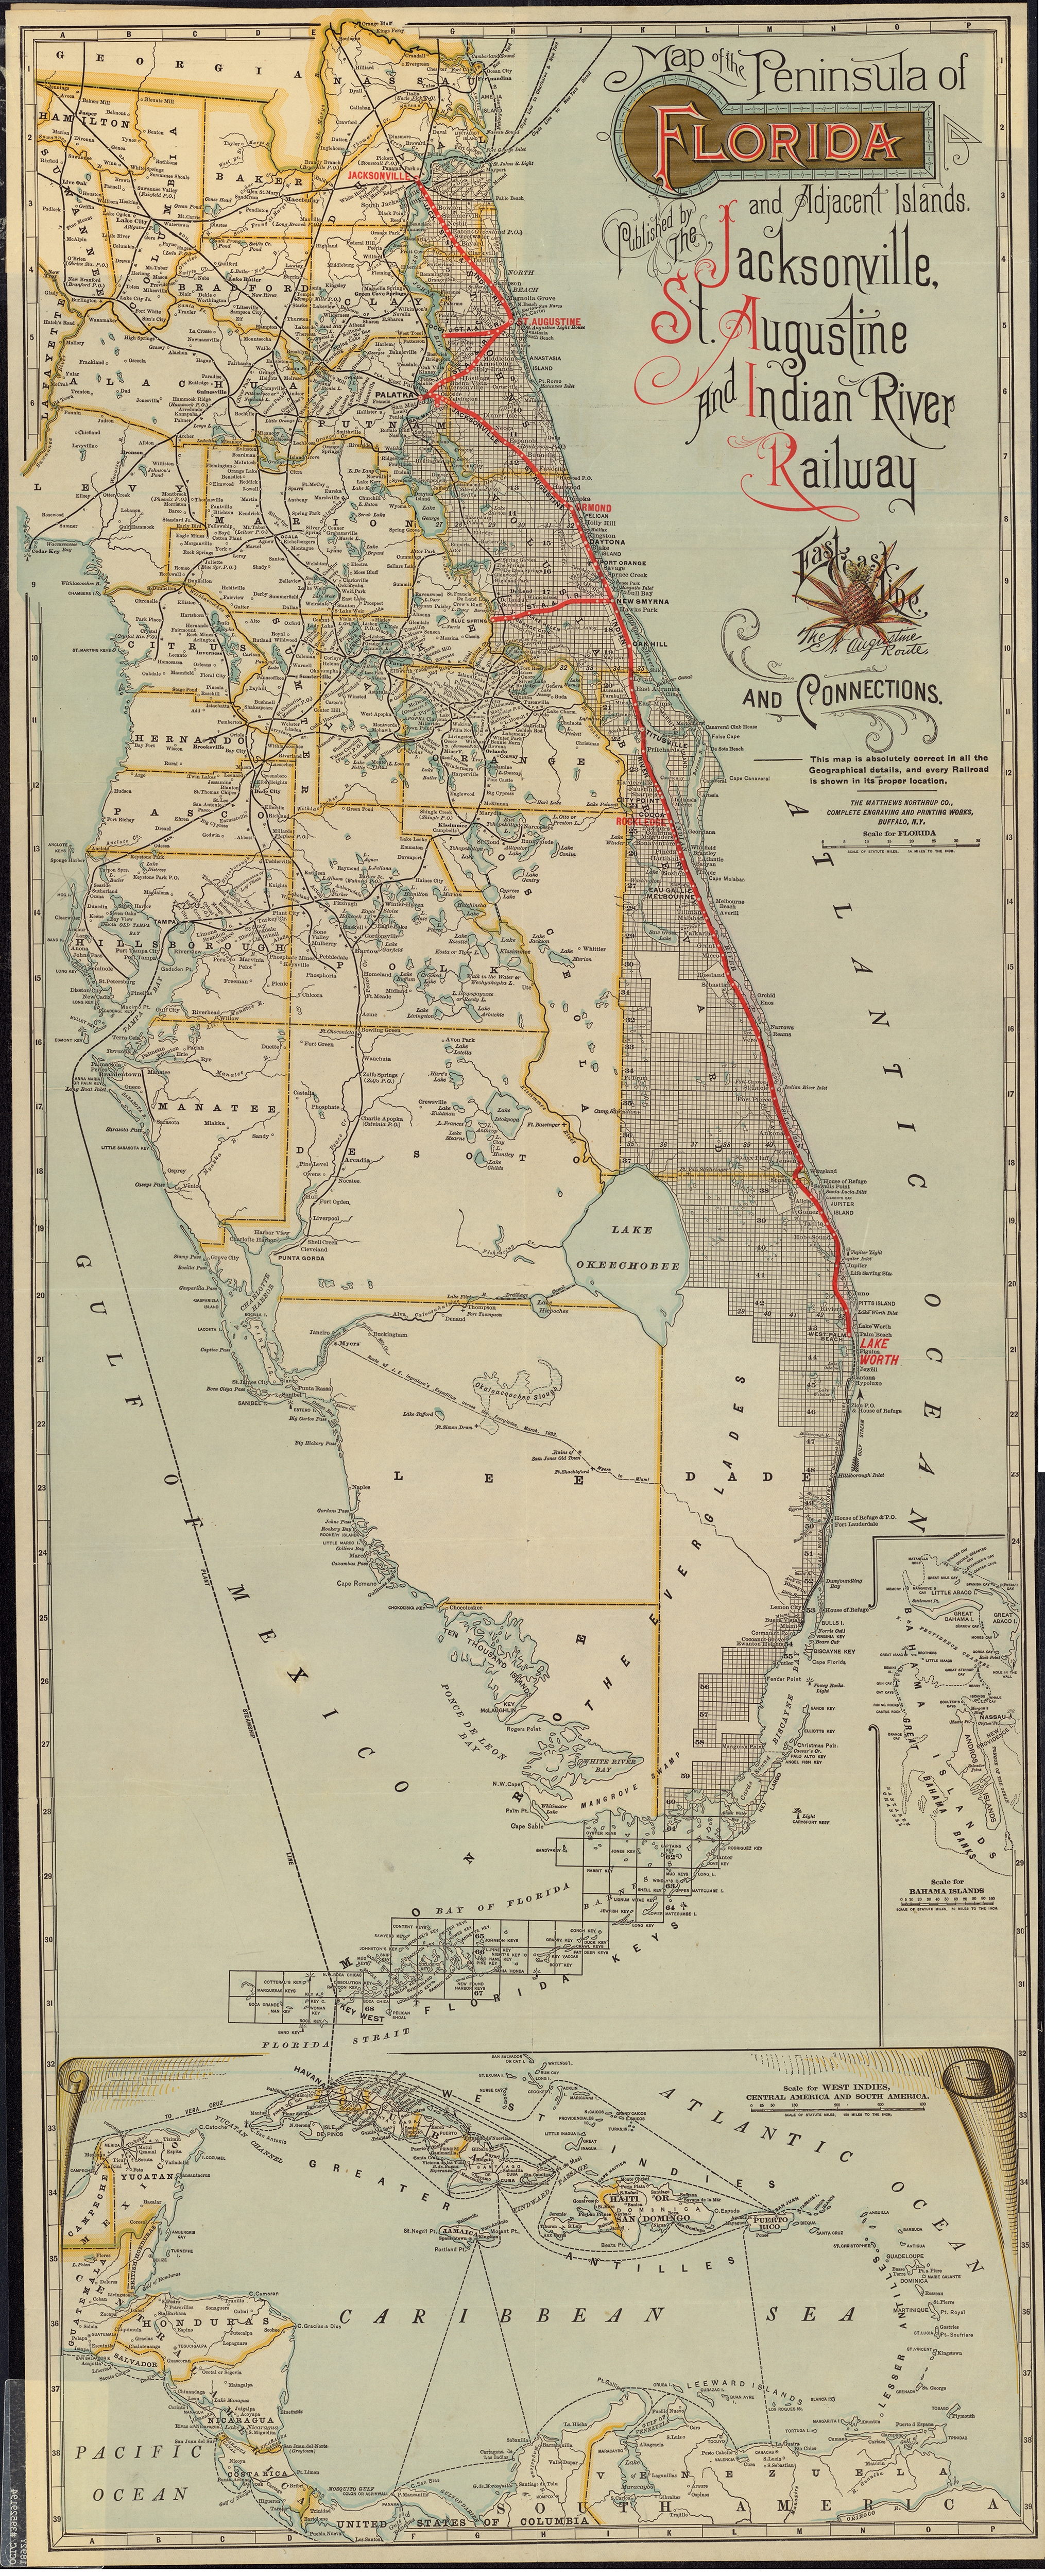 East Coast Line: Florida Peninsula, 1892